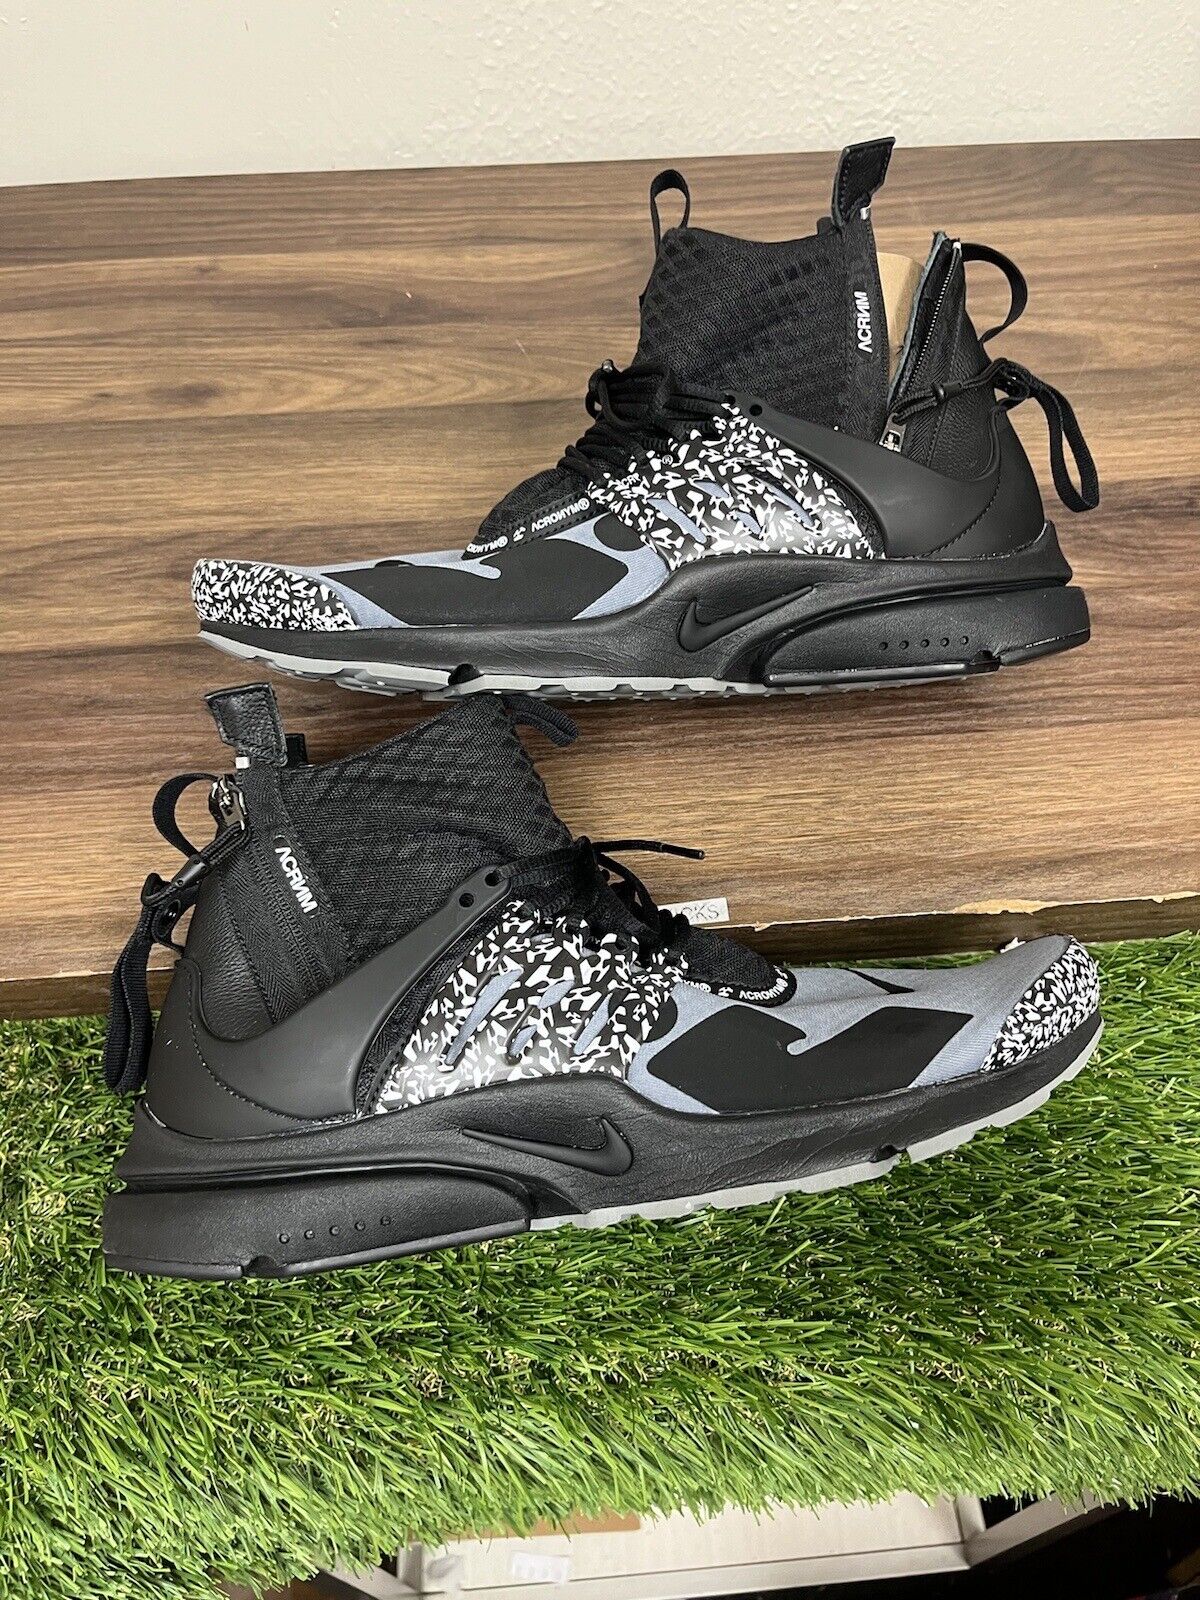 Size 14- Nike Air Presto Mid x Acronym Cool Grey 2018